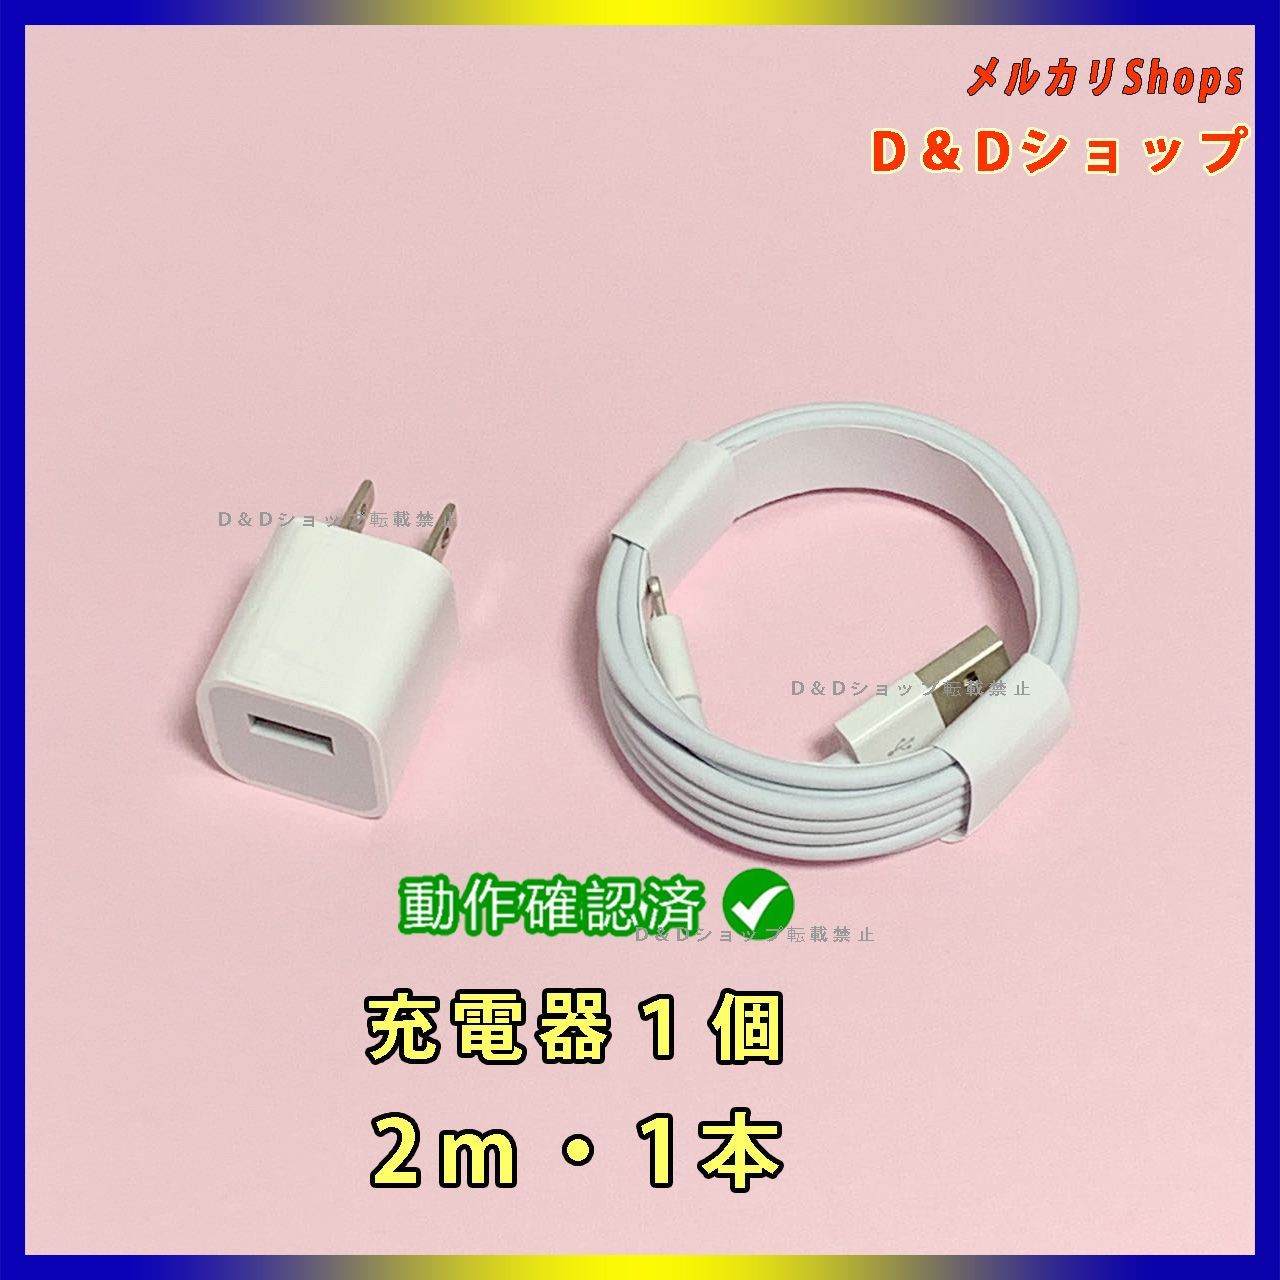 1個 USB充電器 2m1本 iPhone充電ケーブル 充電ケーブル(1Vq) - スマホ